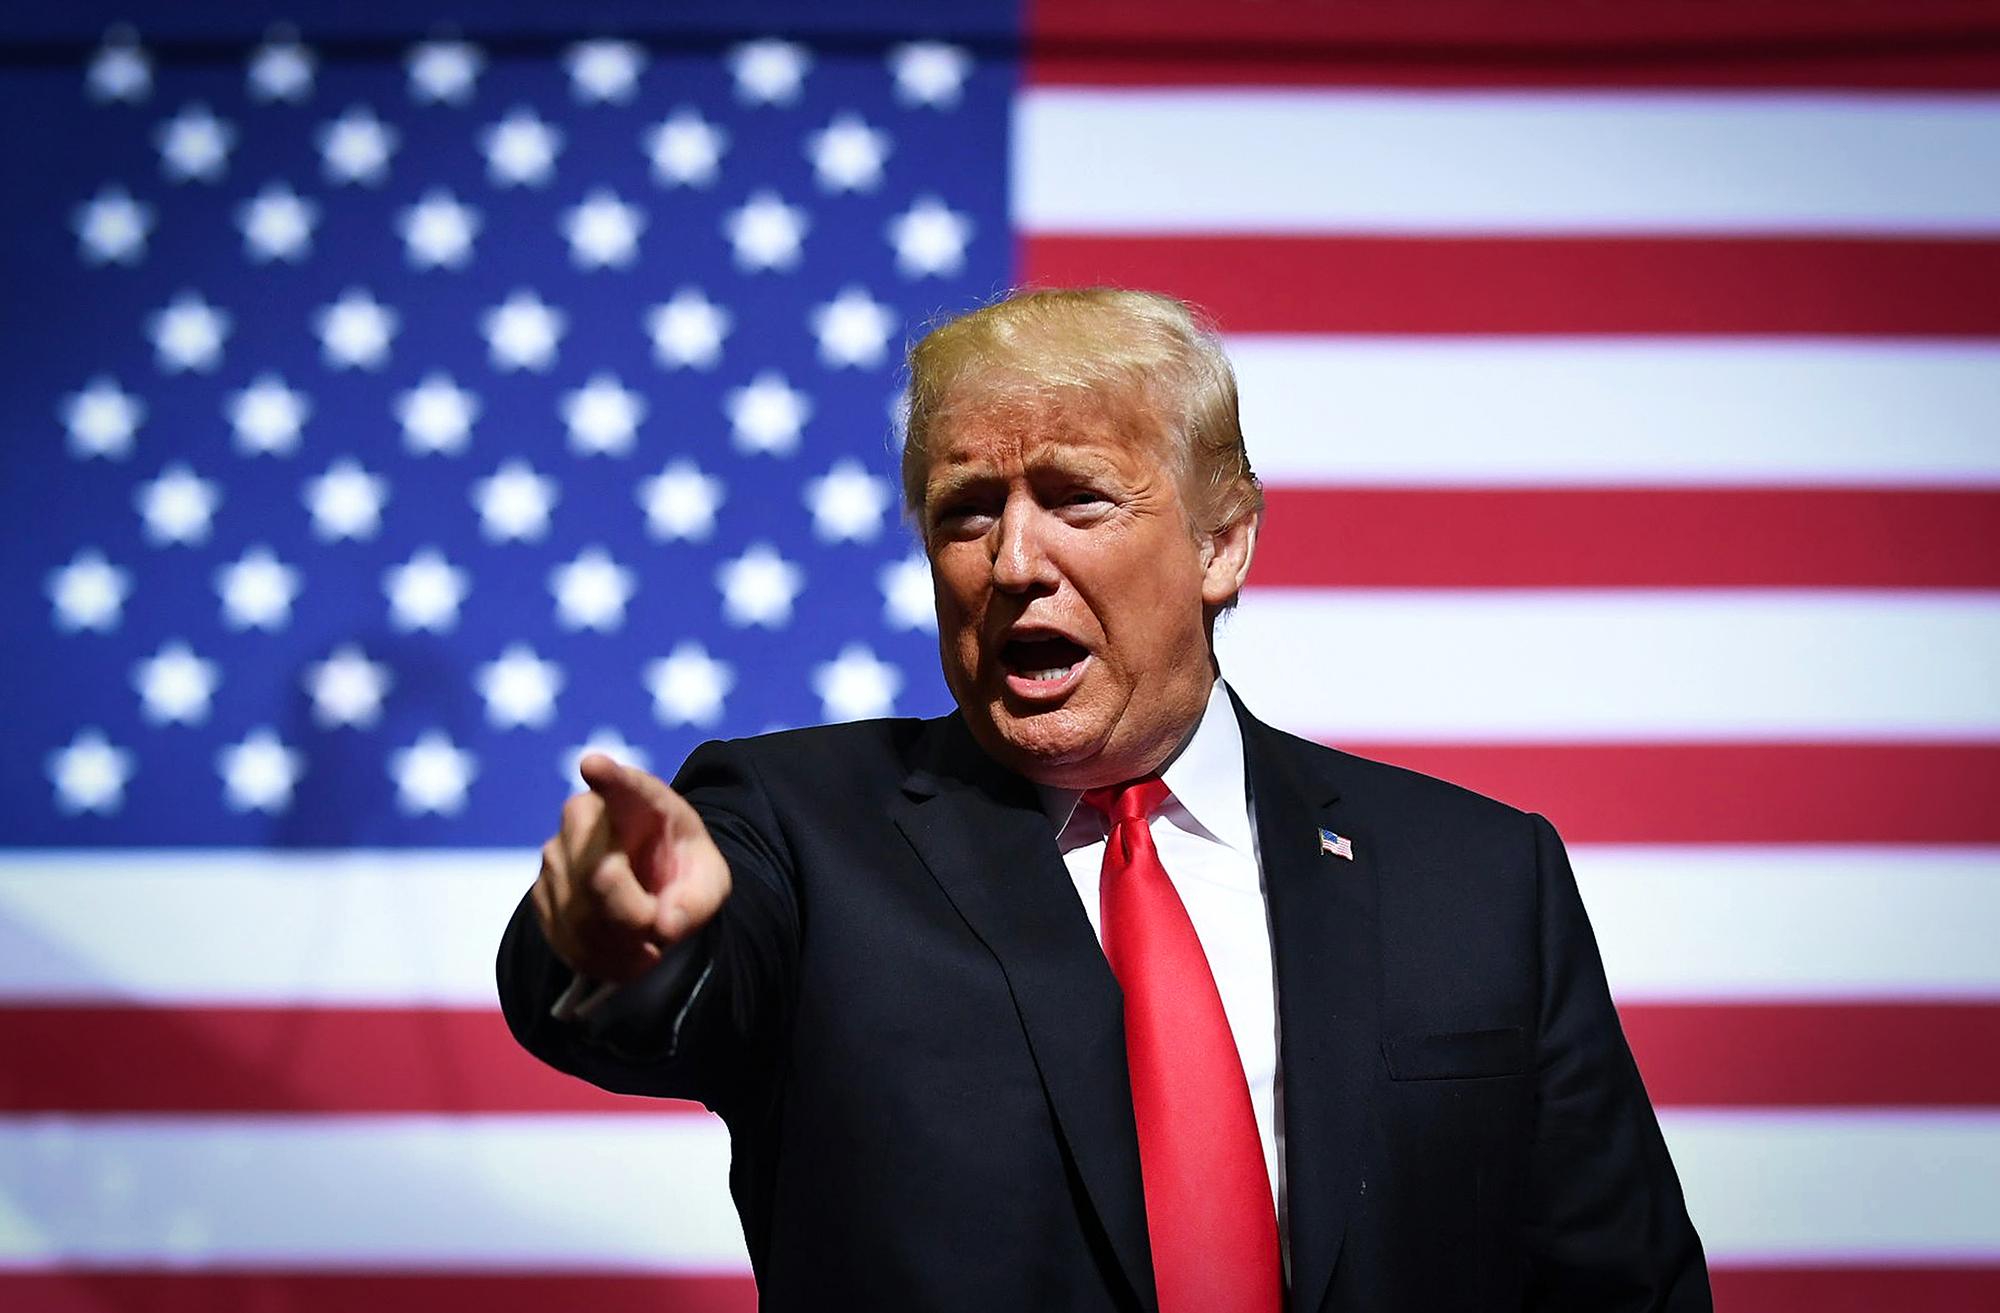 El presidente de los Estados Unidos, Donald Trump, hace gestos mientras habla durante un mitin en el WesBanco Arena en Wheeling, West Virginia, el 29 de septiembre de 2018. / AFP PHOTO / MANDEL NGAN